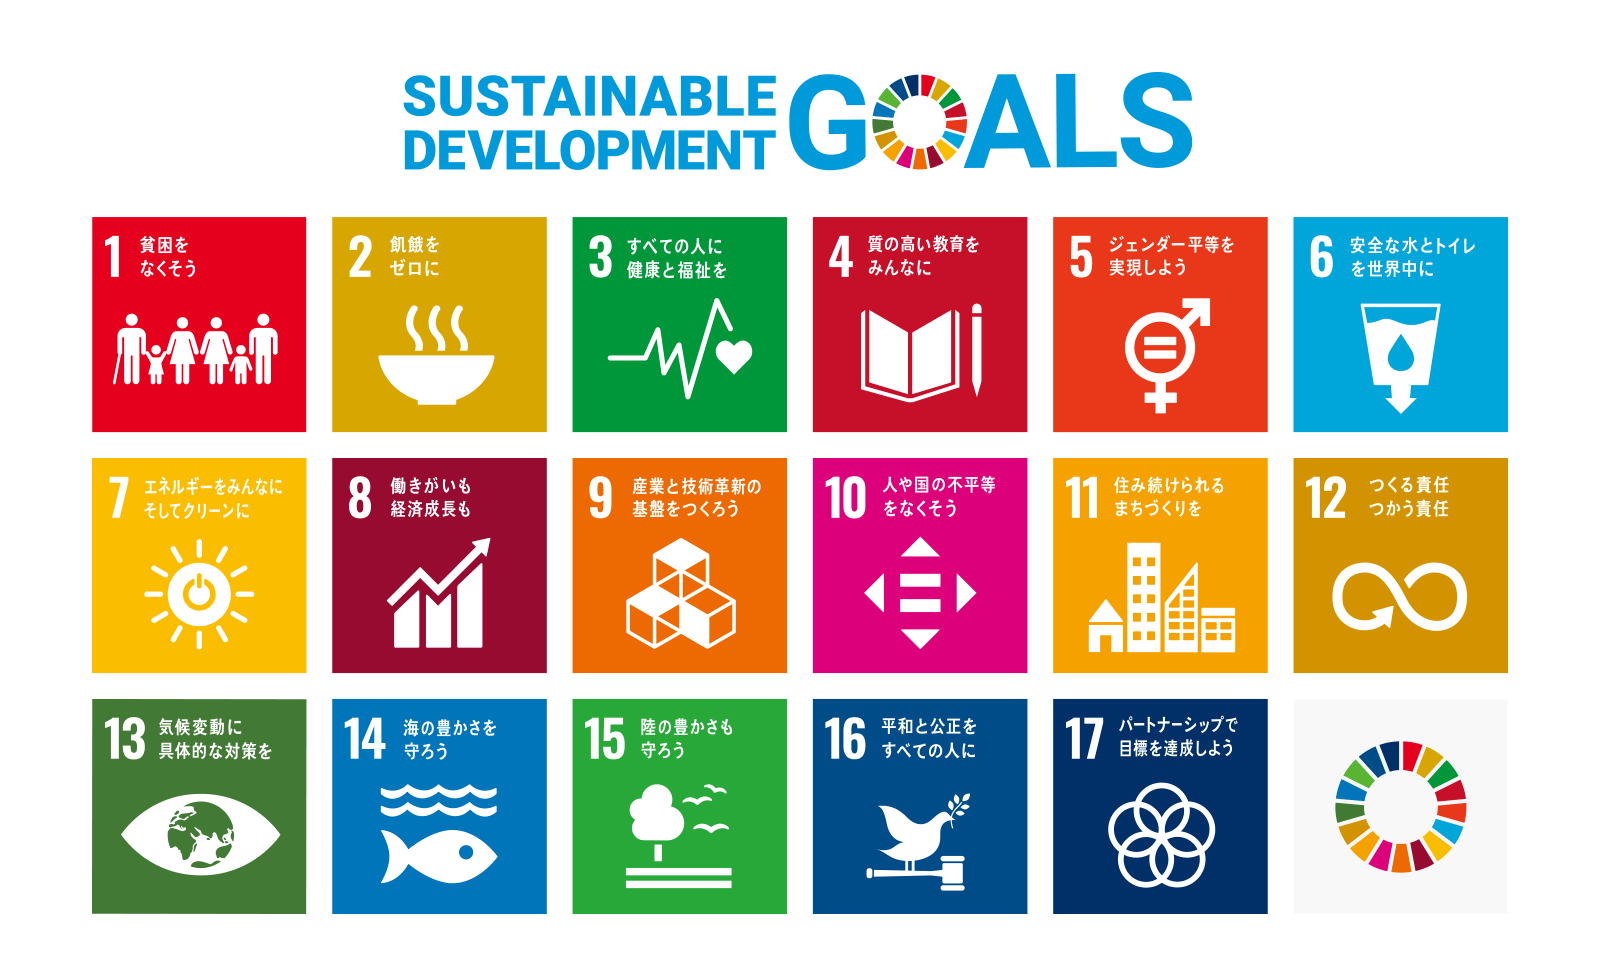 持続可能な開発目標（SDGs）の達成に向けて地域と共に取り組むことを宣言しました。